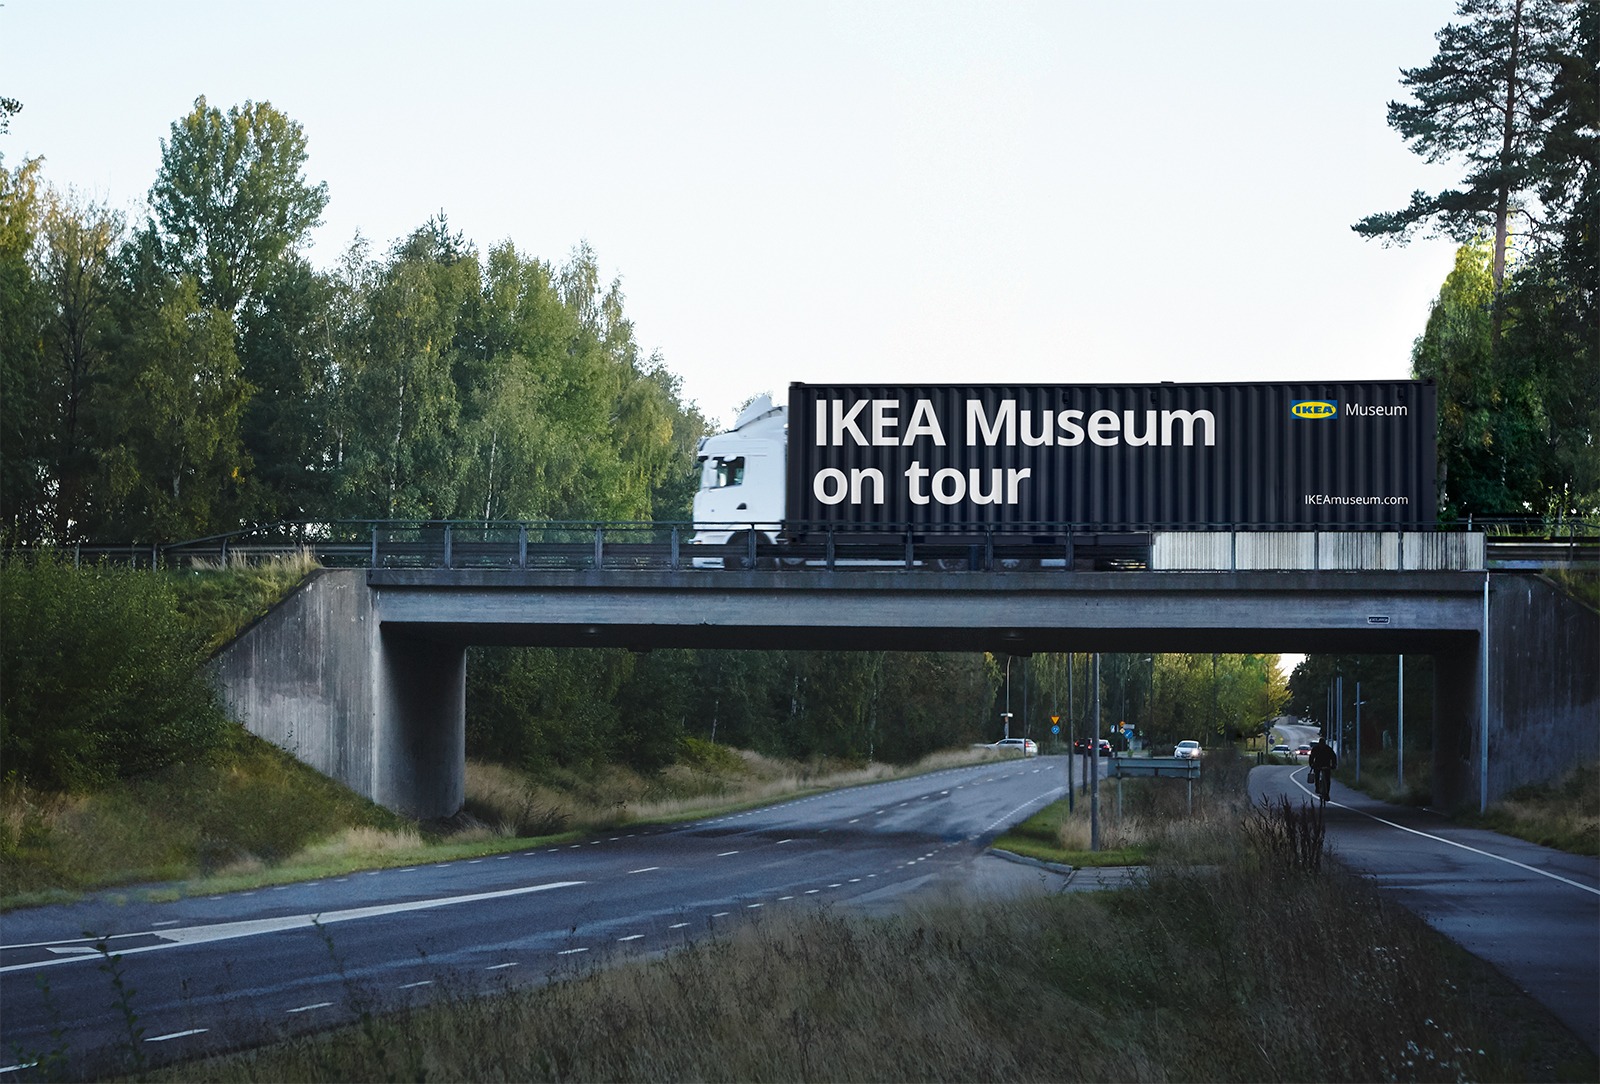 Träd, en väg och en bro över vägen där en lastbil med texten ”IKEA Museum on tour” just kör förbi.